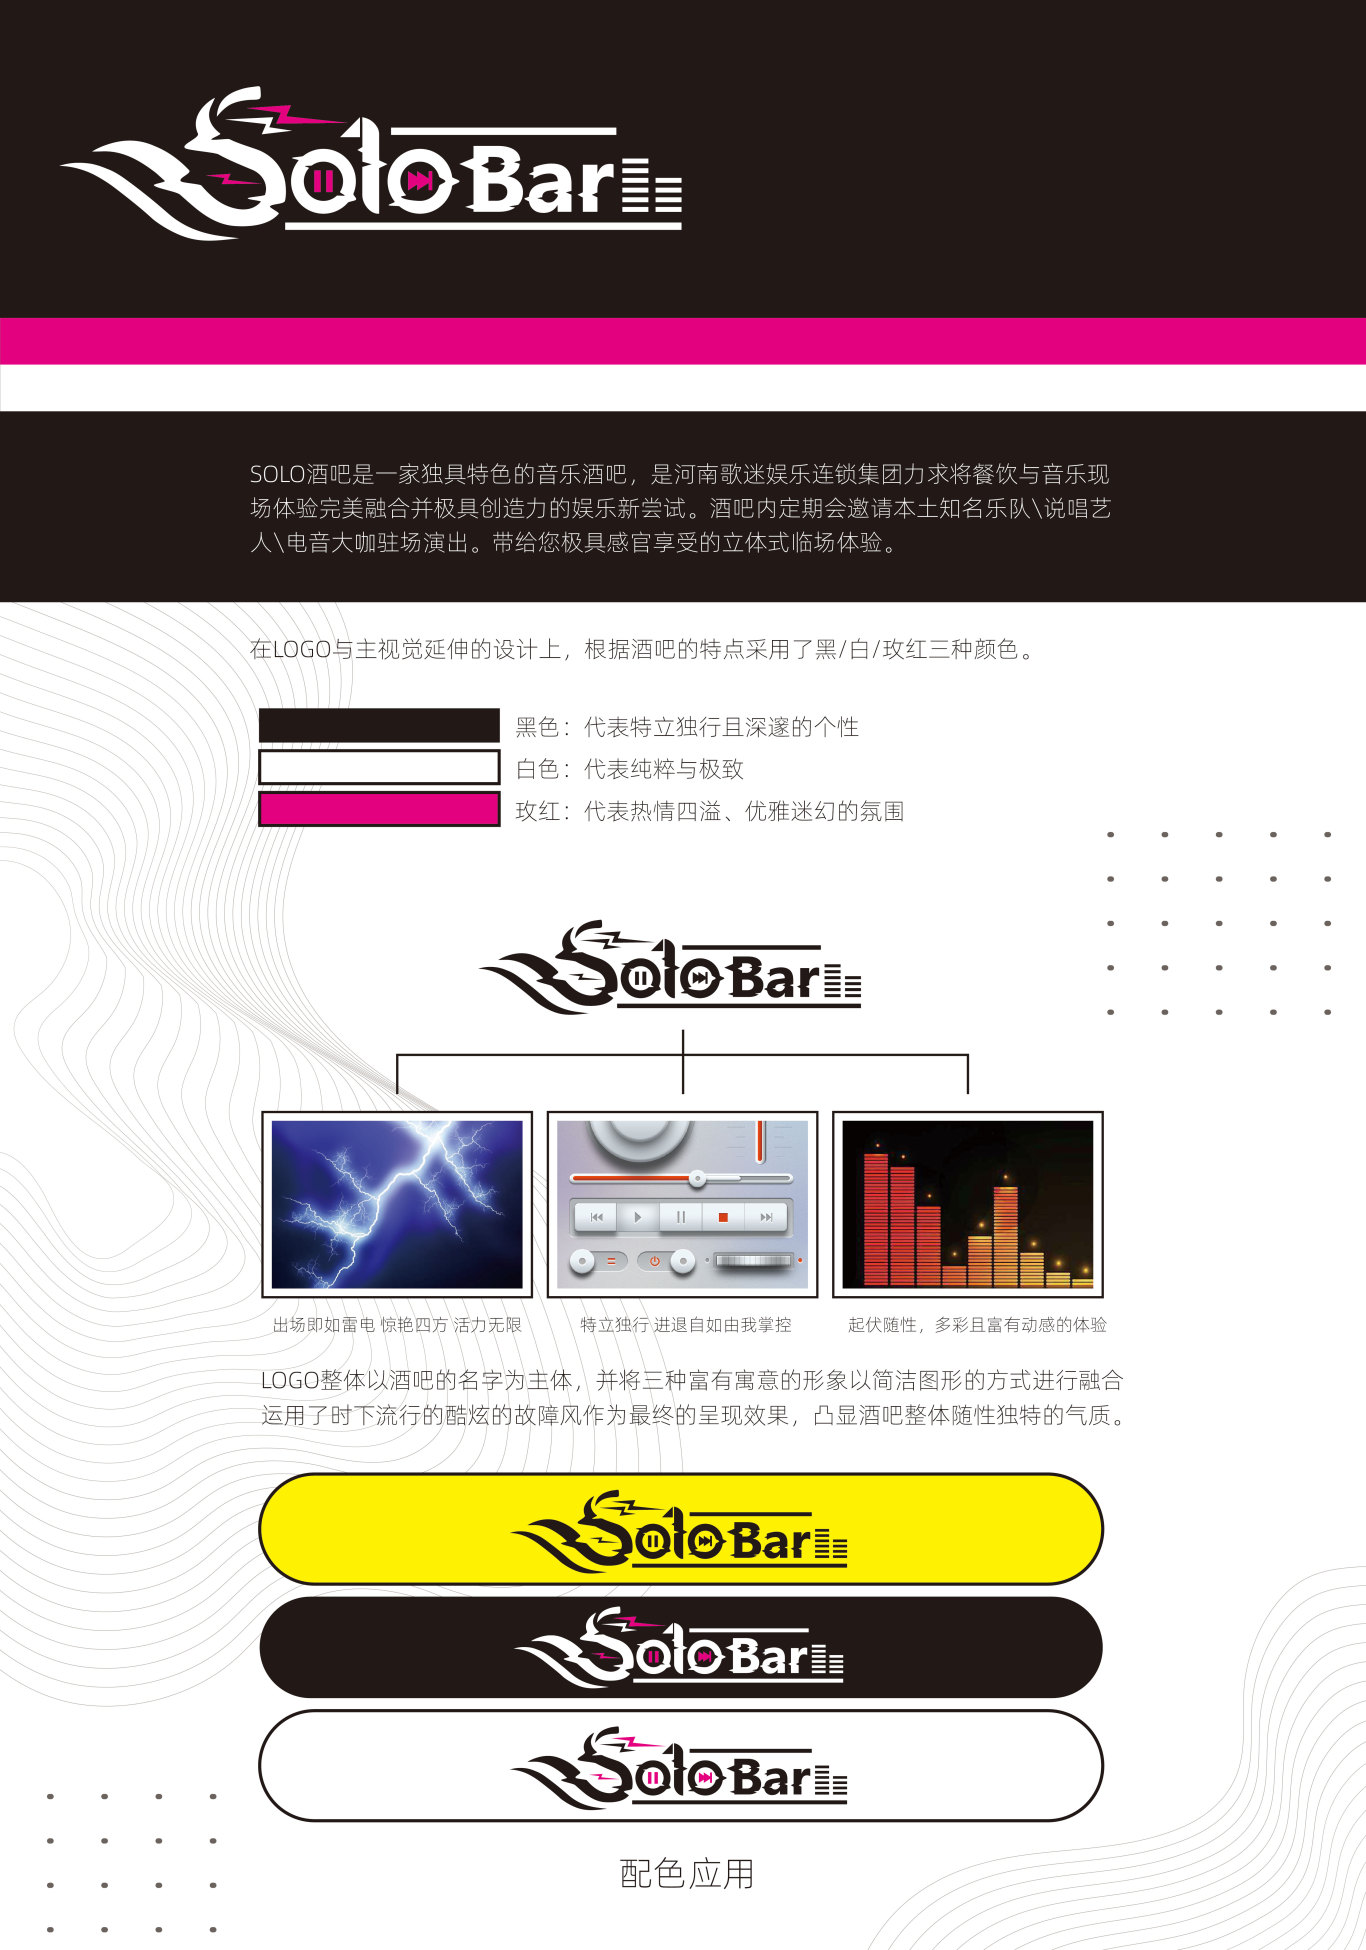 河南歌迷娱乐连锁 Solo酒吧VI视觉设计图8